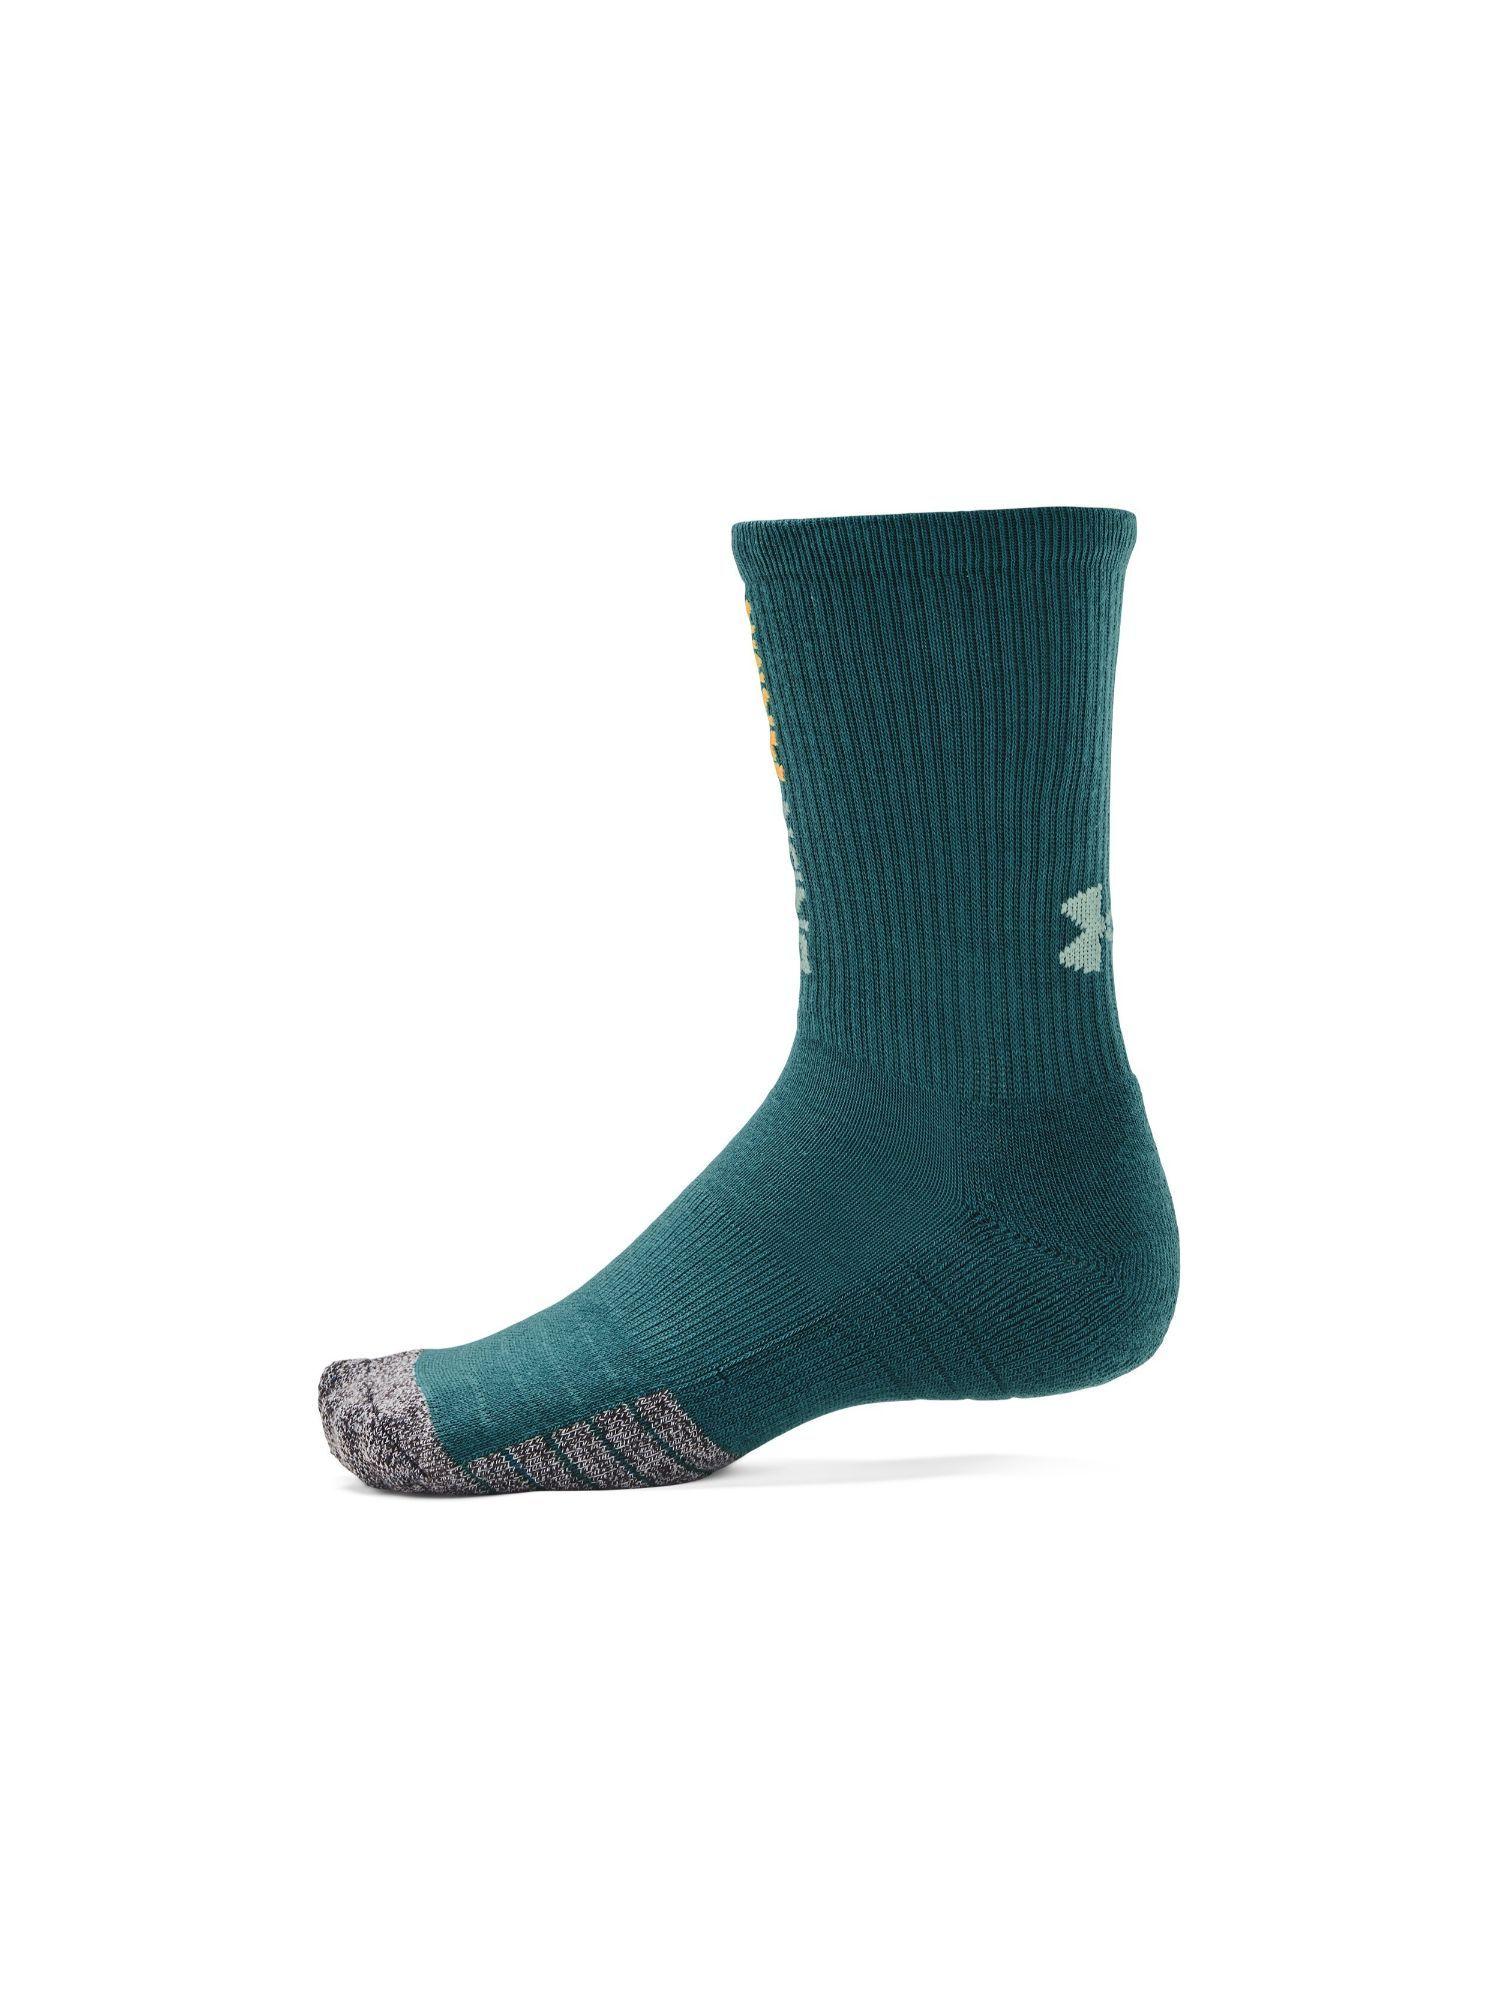 unisex heat gear novelty crew socks - green